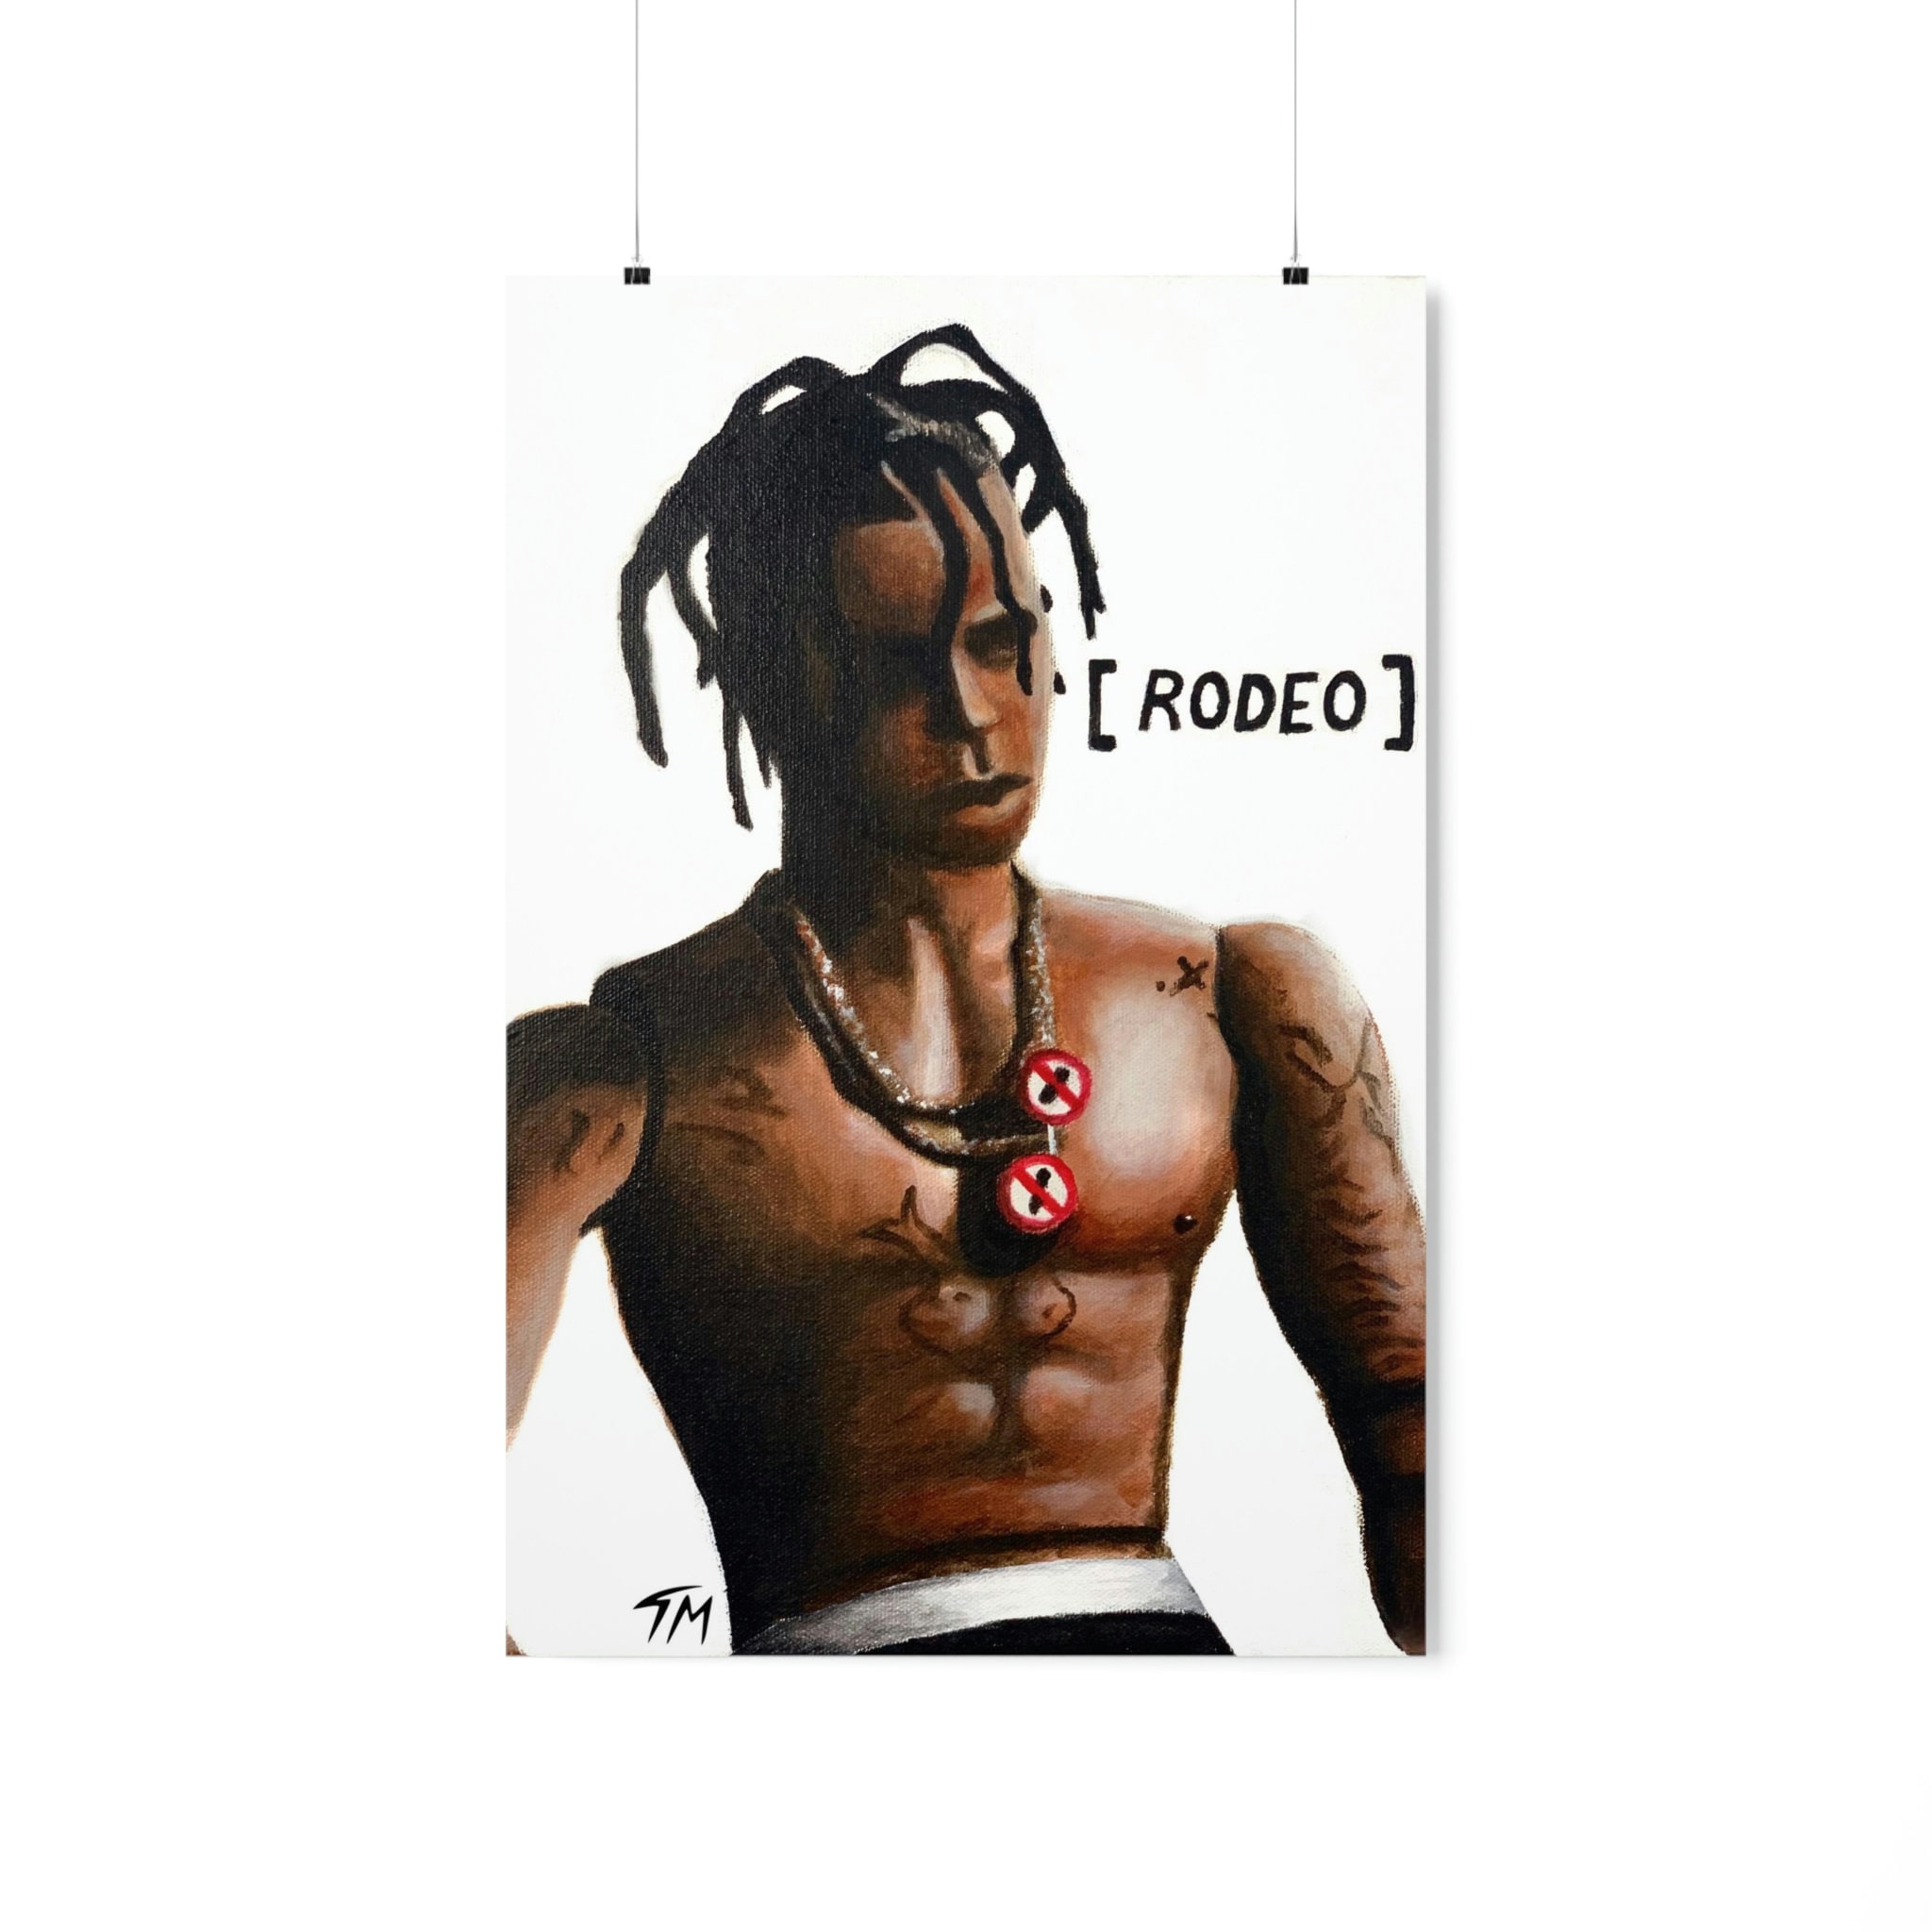 Travis Scott - Rodeo Action Figure - Canvas Poster - Rap Prints